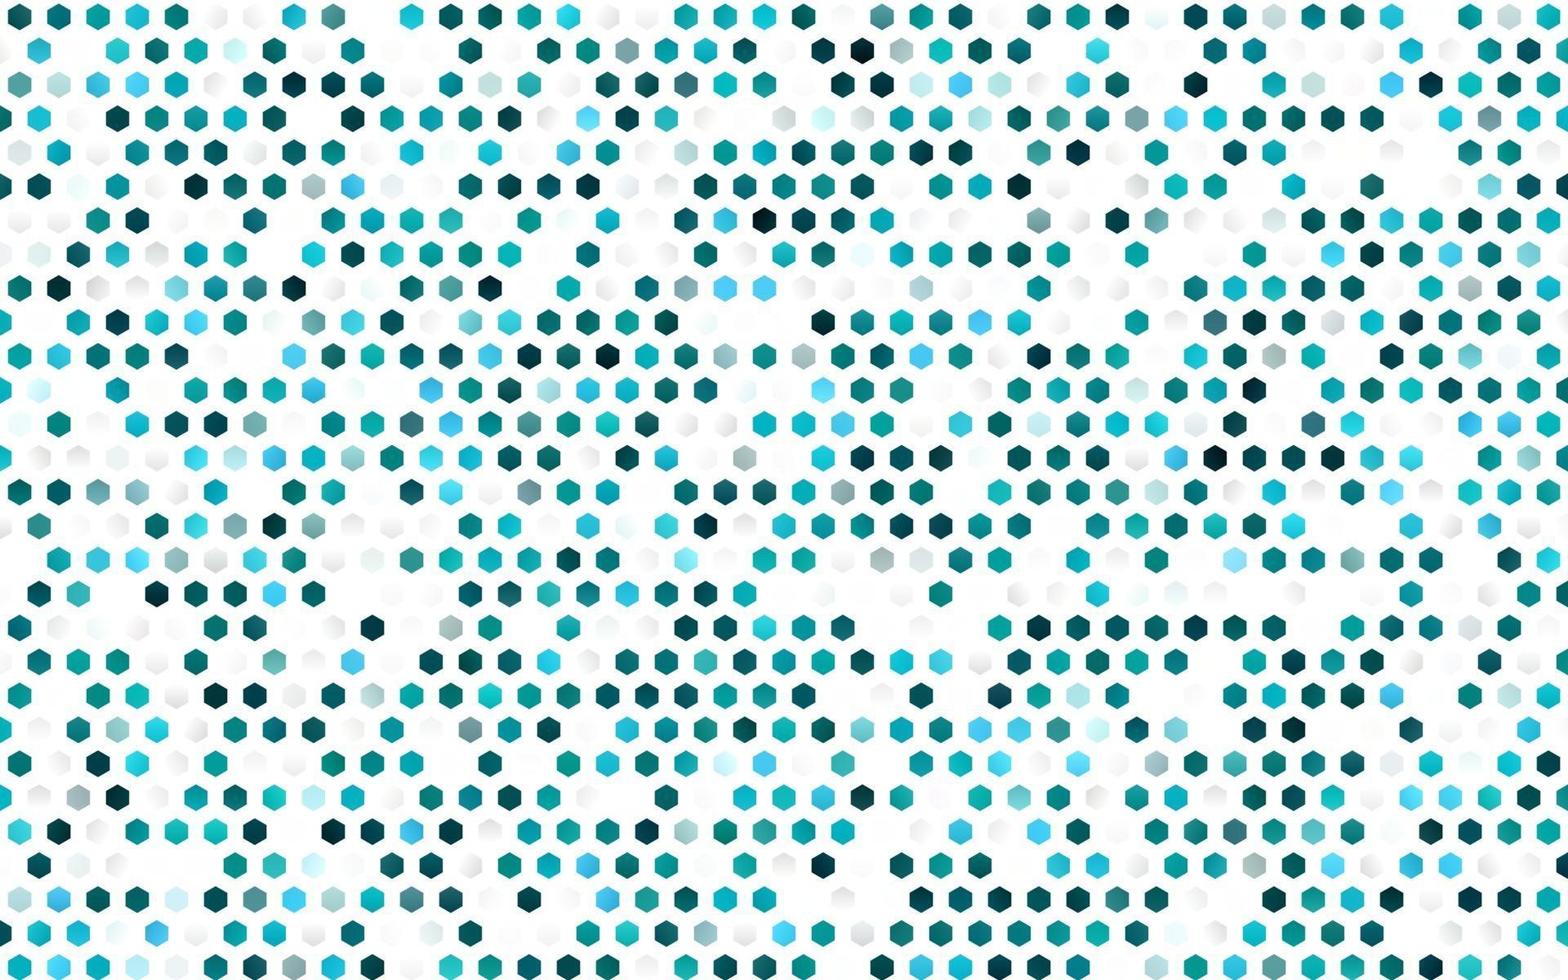 plantilla de vector azul claro en estilo hexagonal.